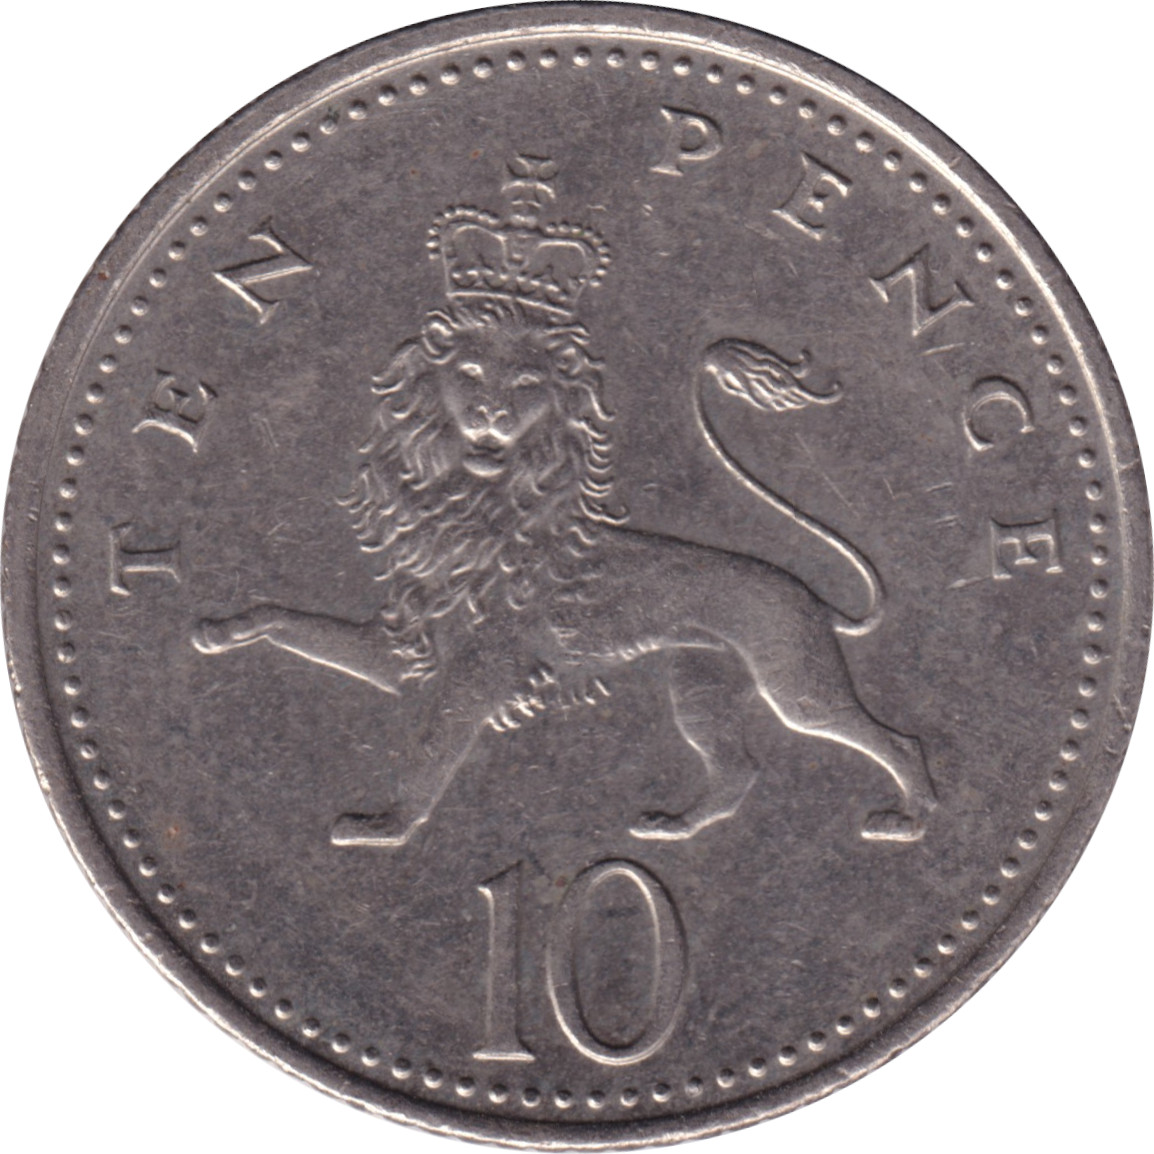 10 pence - Elizabeth II - Tête mature - Petit module